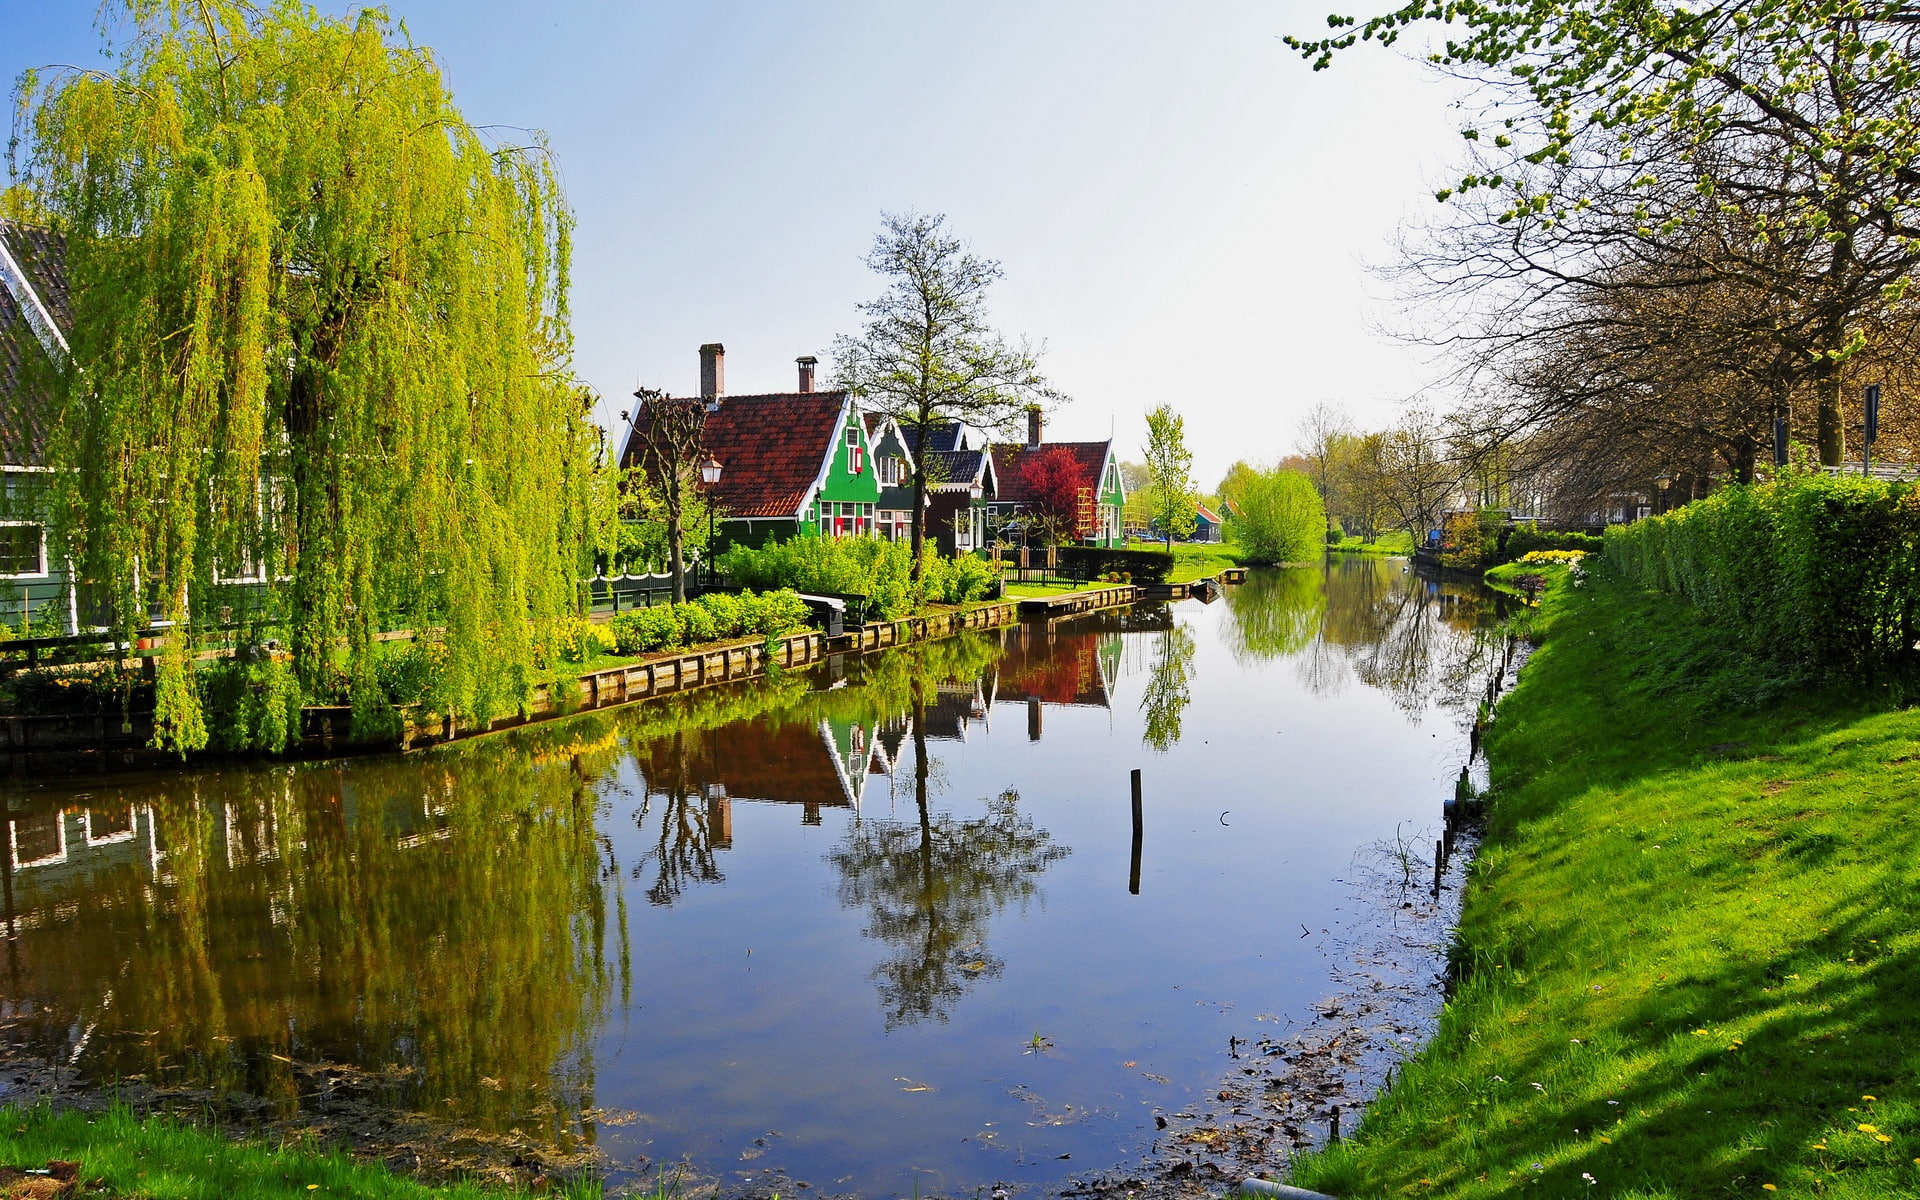 Netherlands Zaandam, green grass field and body of water